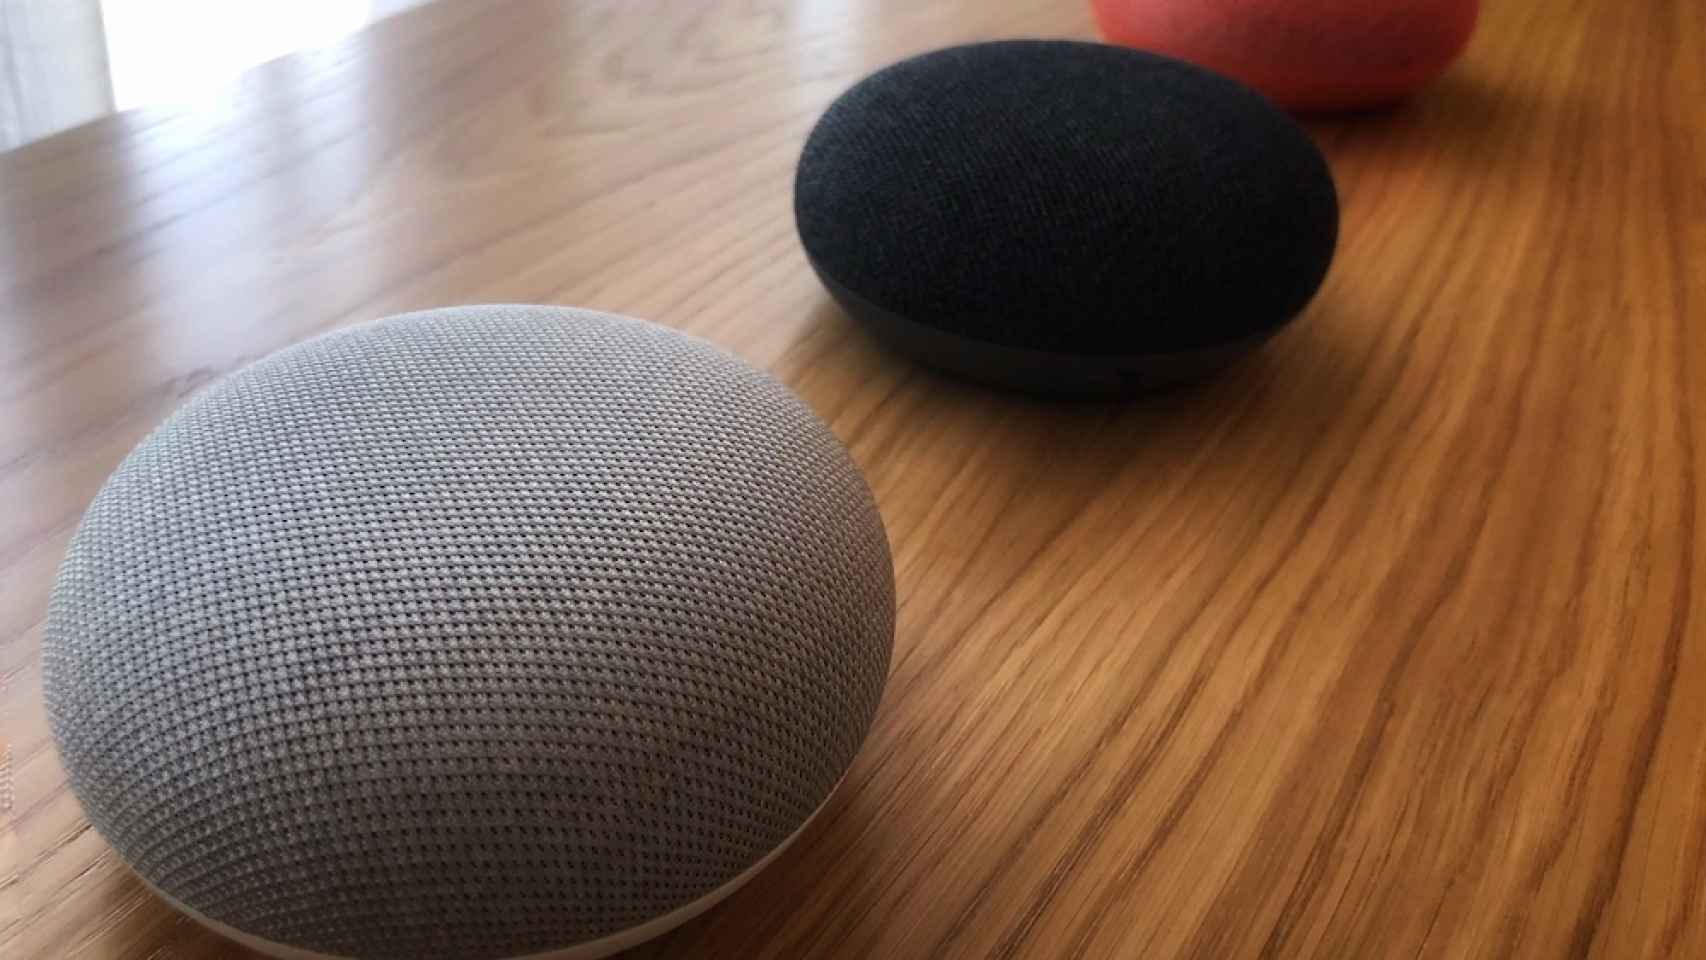 Google Nest Mini - Altavoz inteligente para cualquier habitación